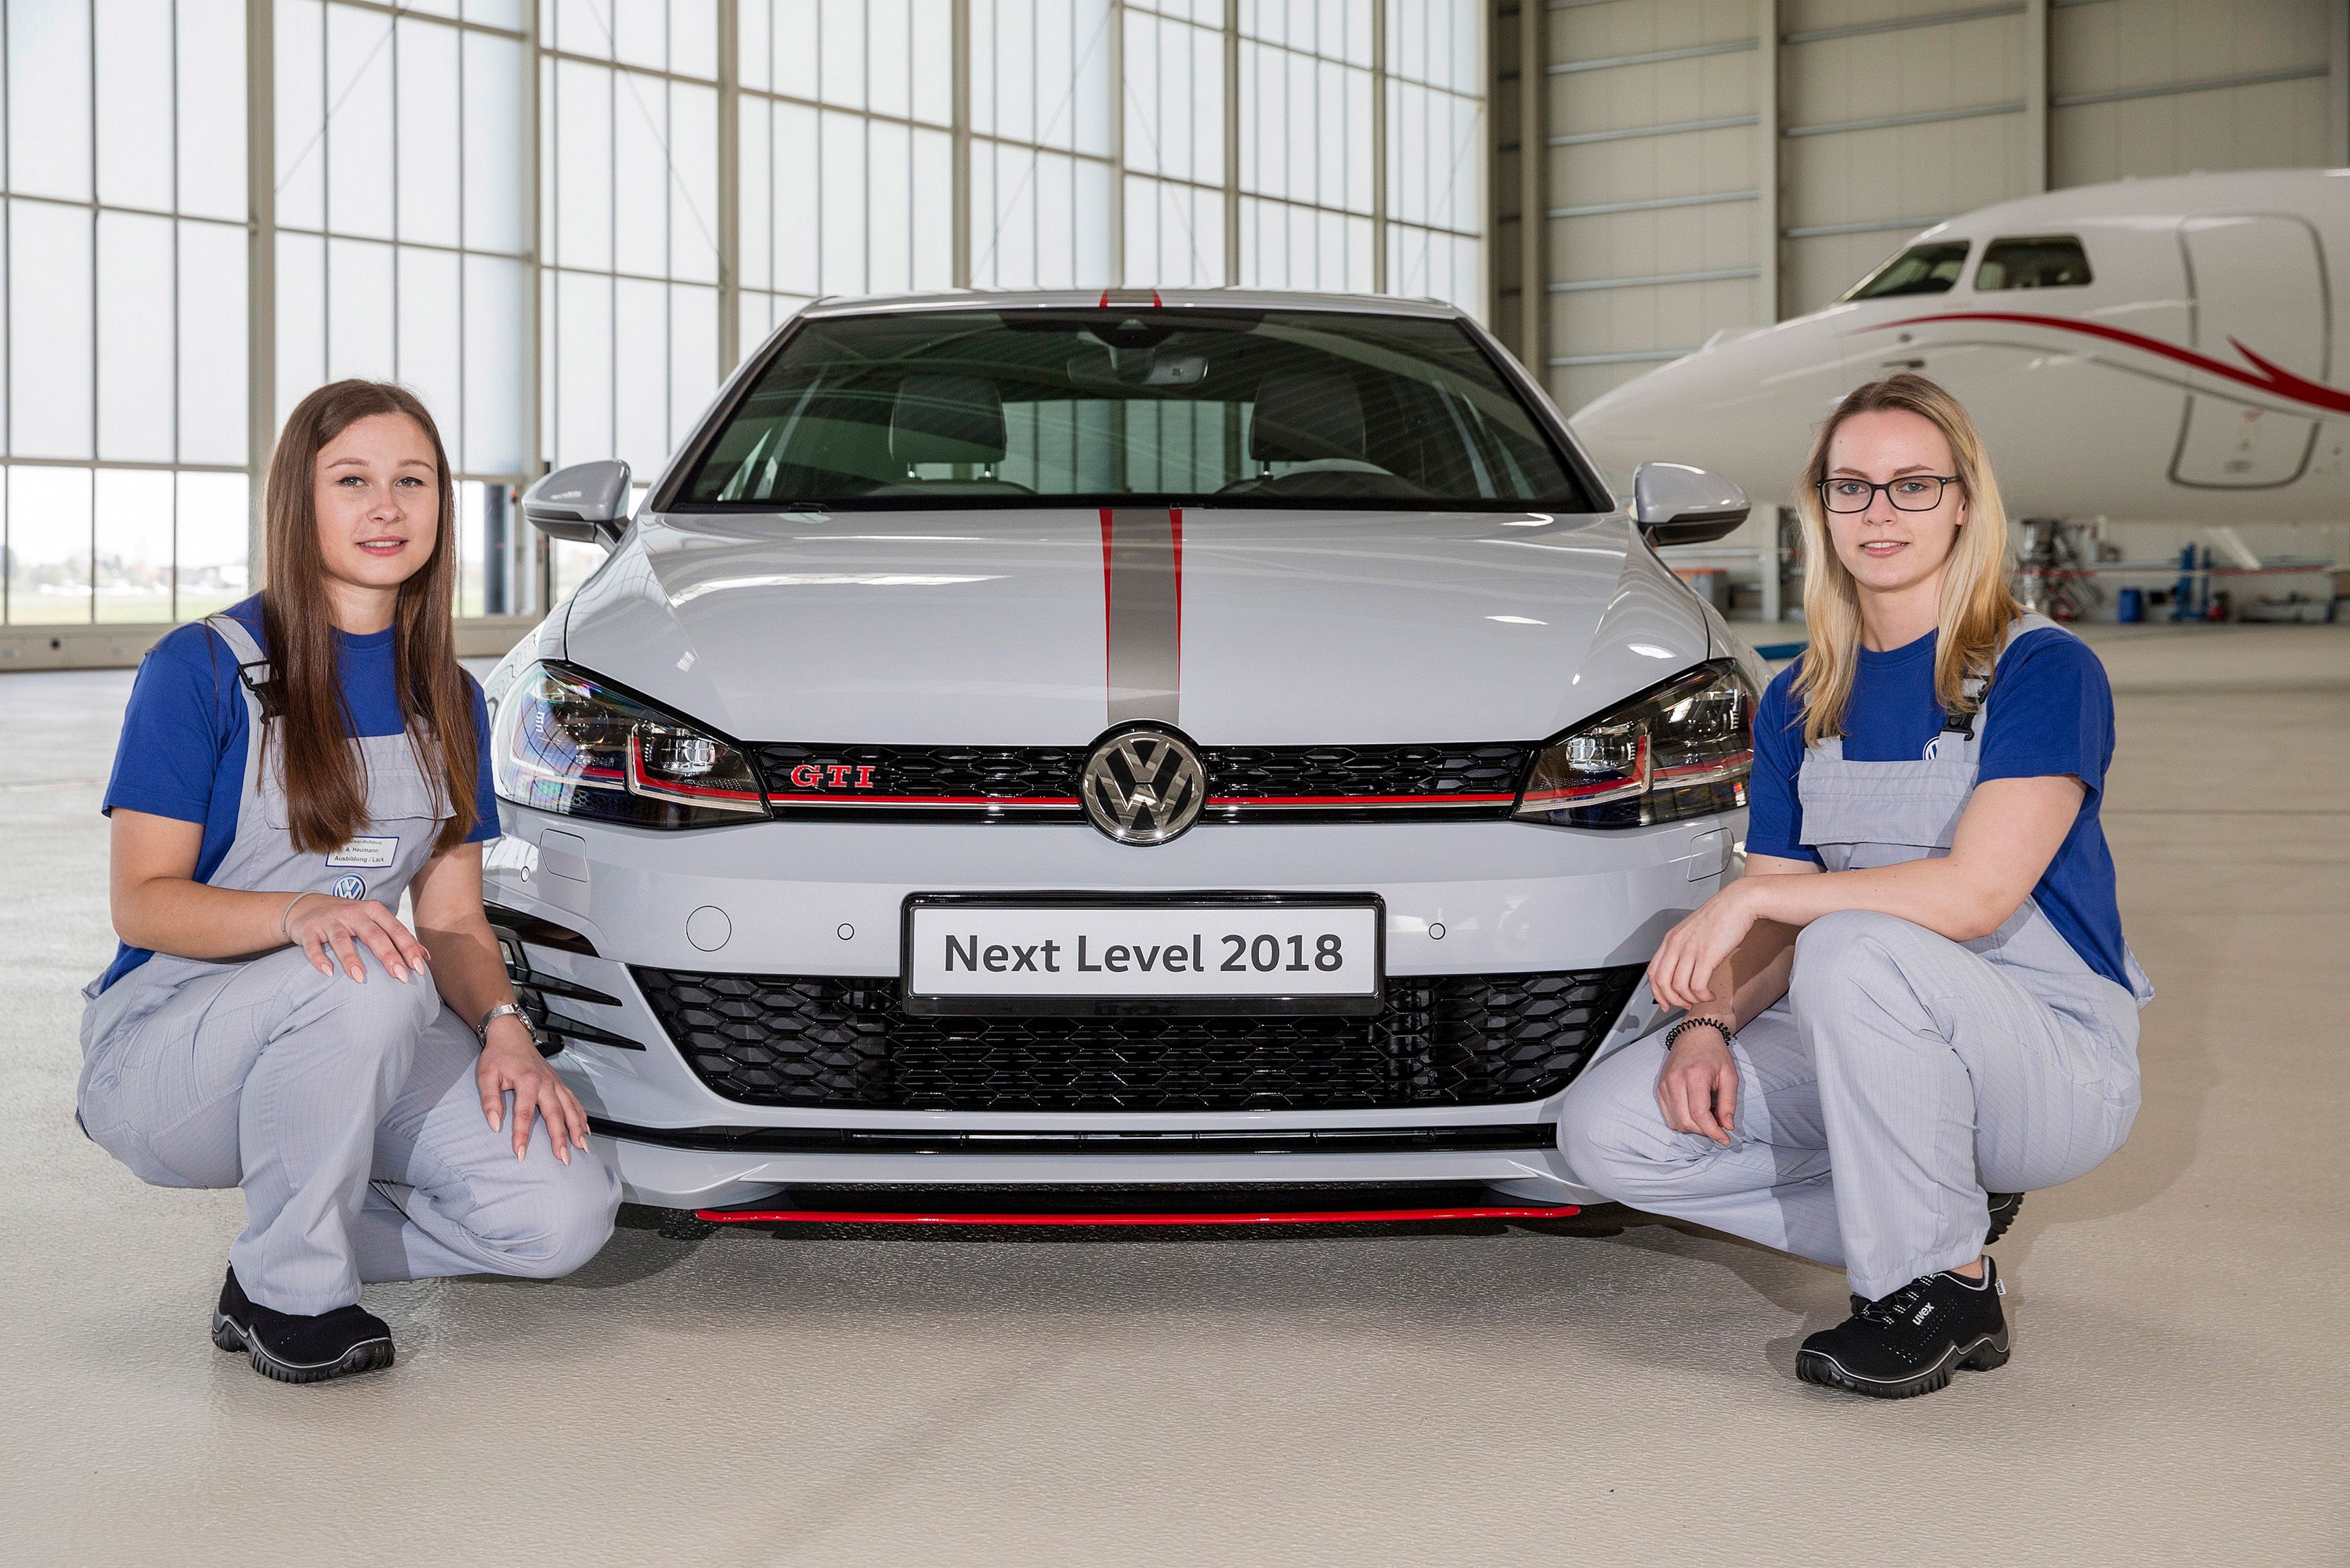 2018 Volkswagen Golf GTI Next Level